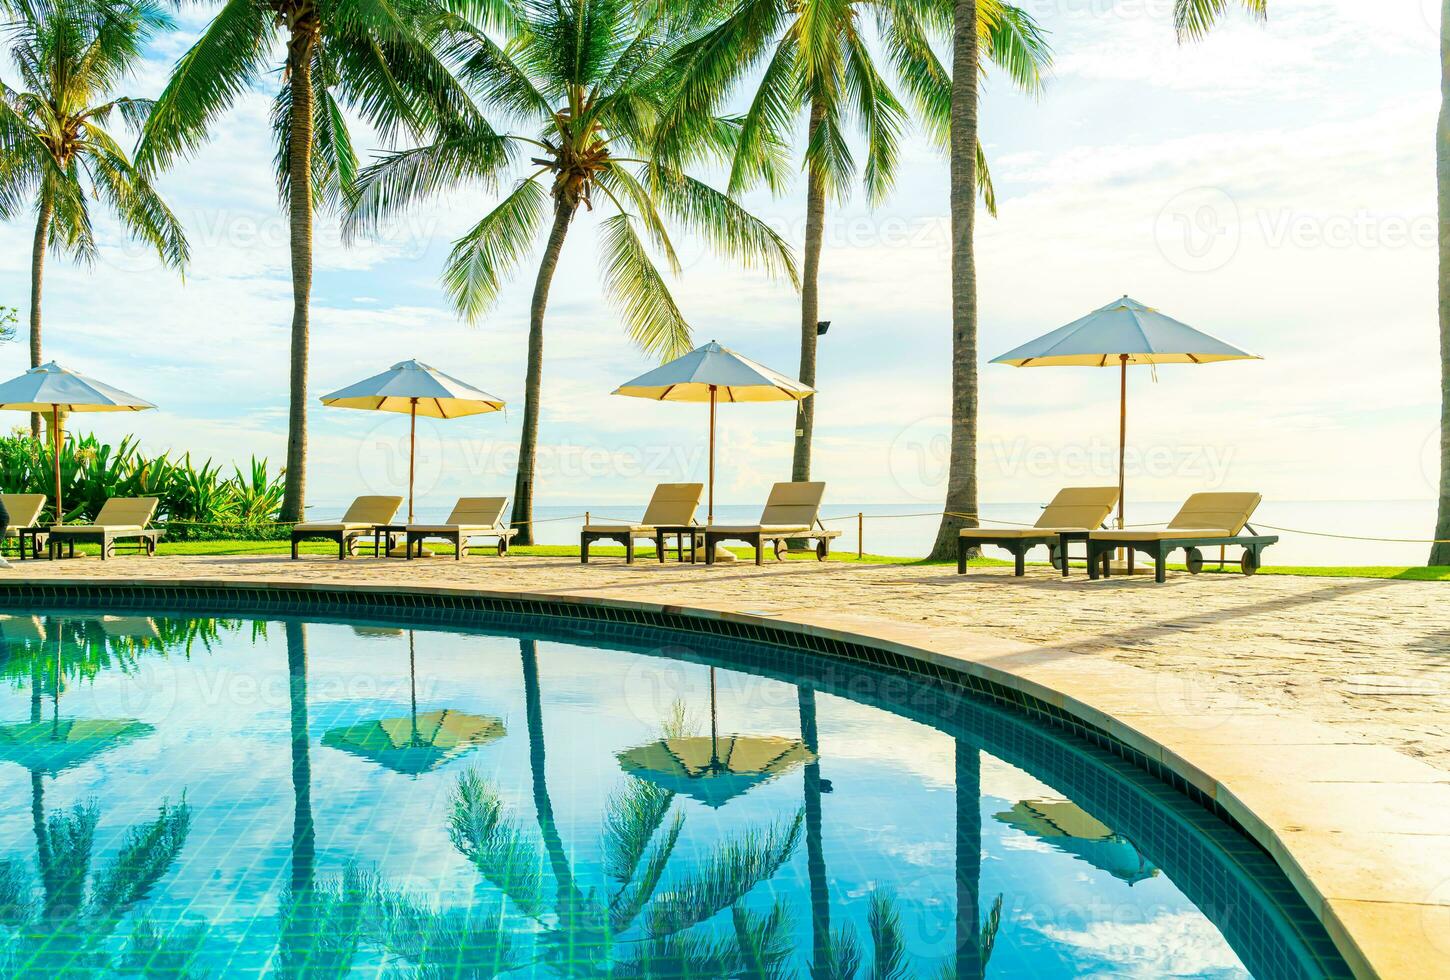 Hermosa sombrilla de lujo y una silla alrededor de la piscina al aire libre en el hotel y resort con palmera de coco en el cielo al atardecer o al amanecer foto